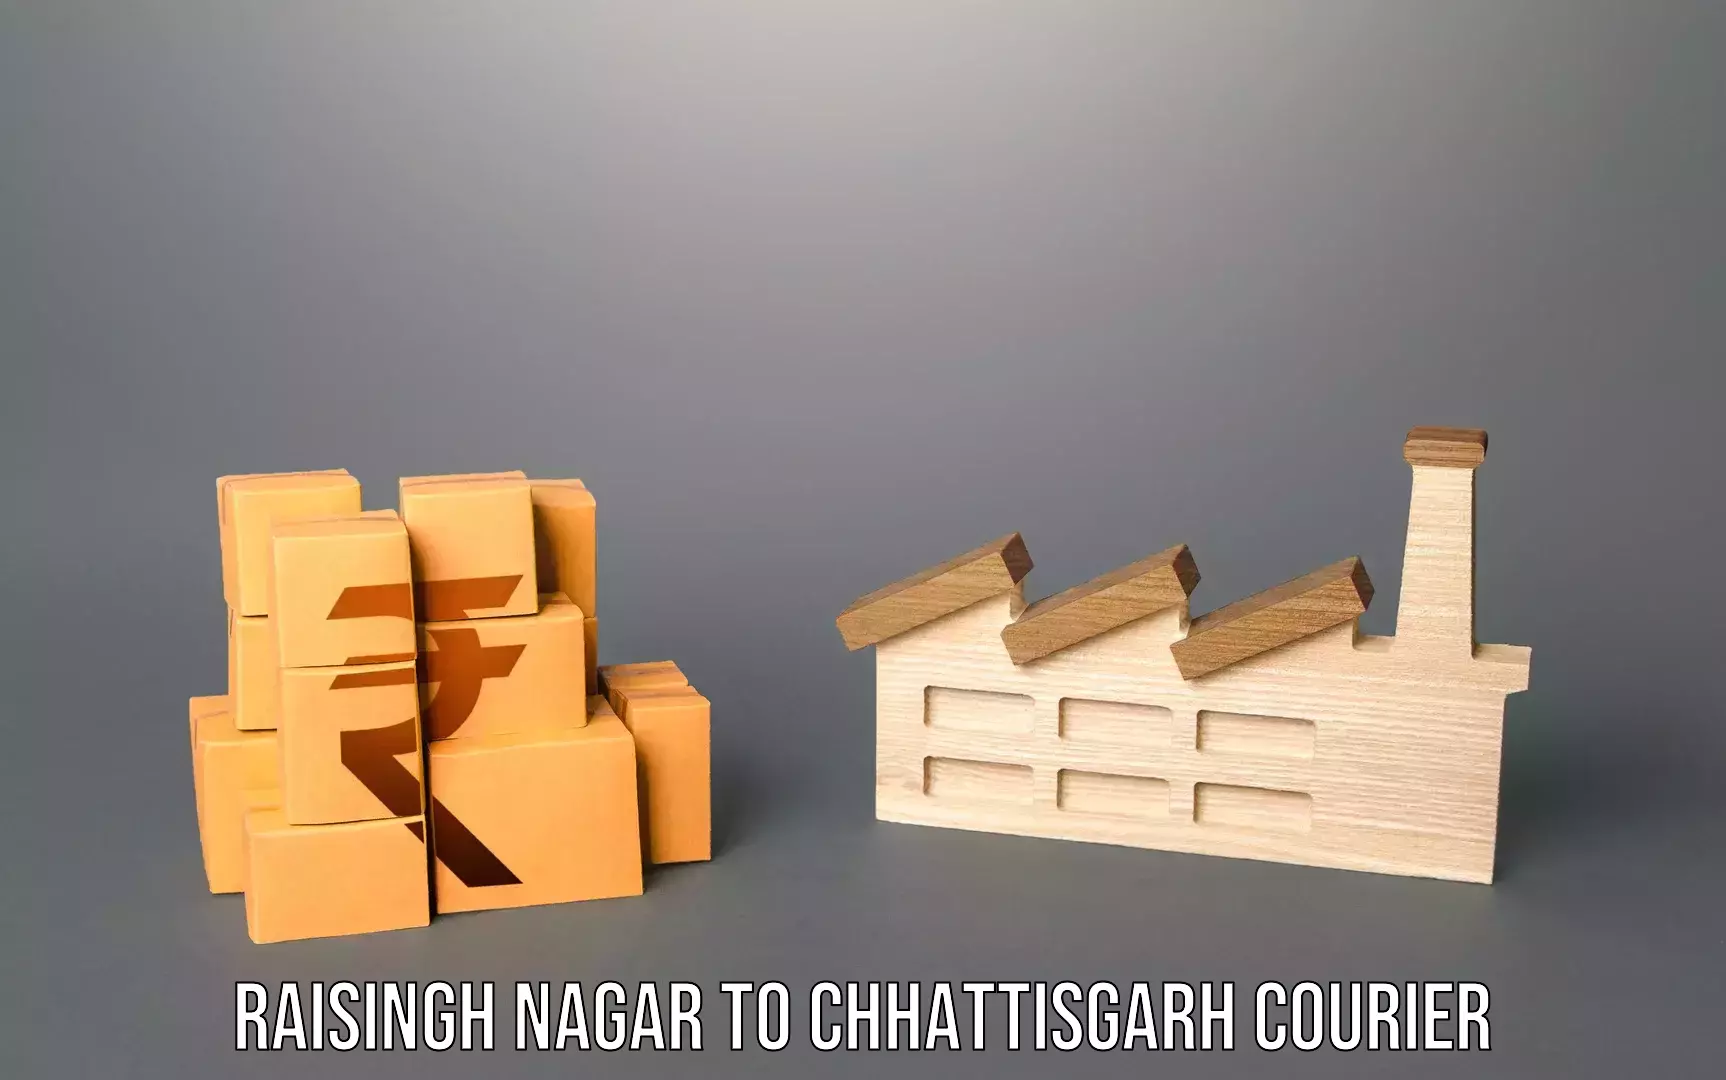 Emergency baggage service Raisingh Nagar to Sakti